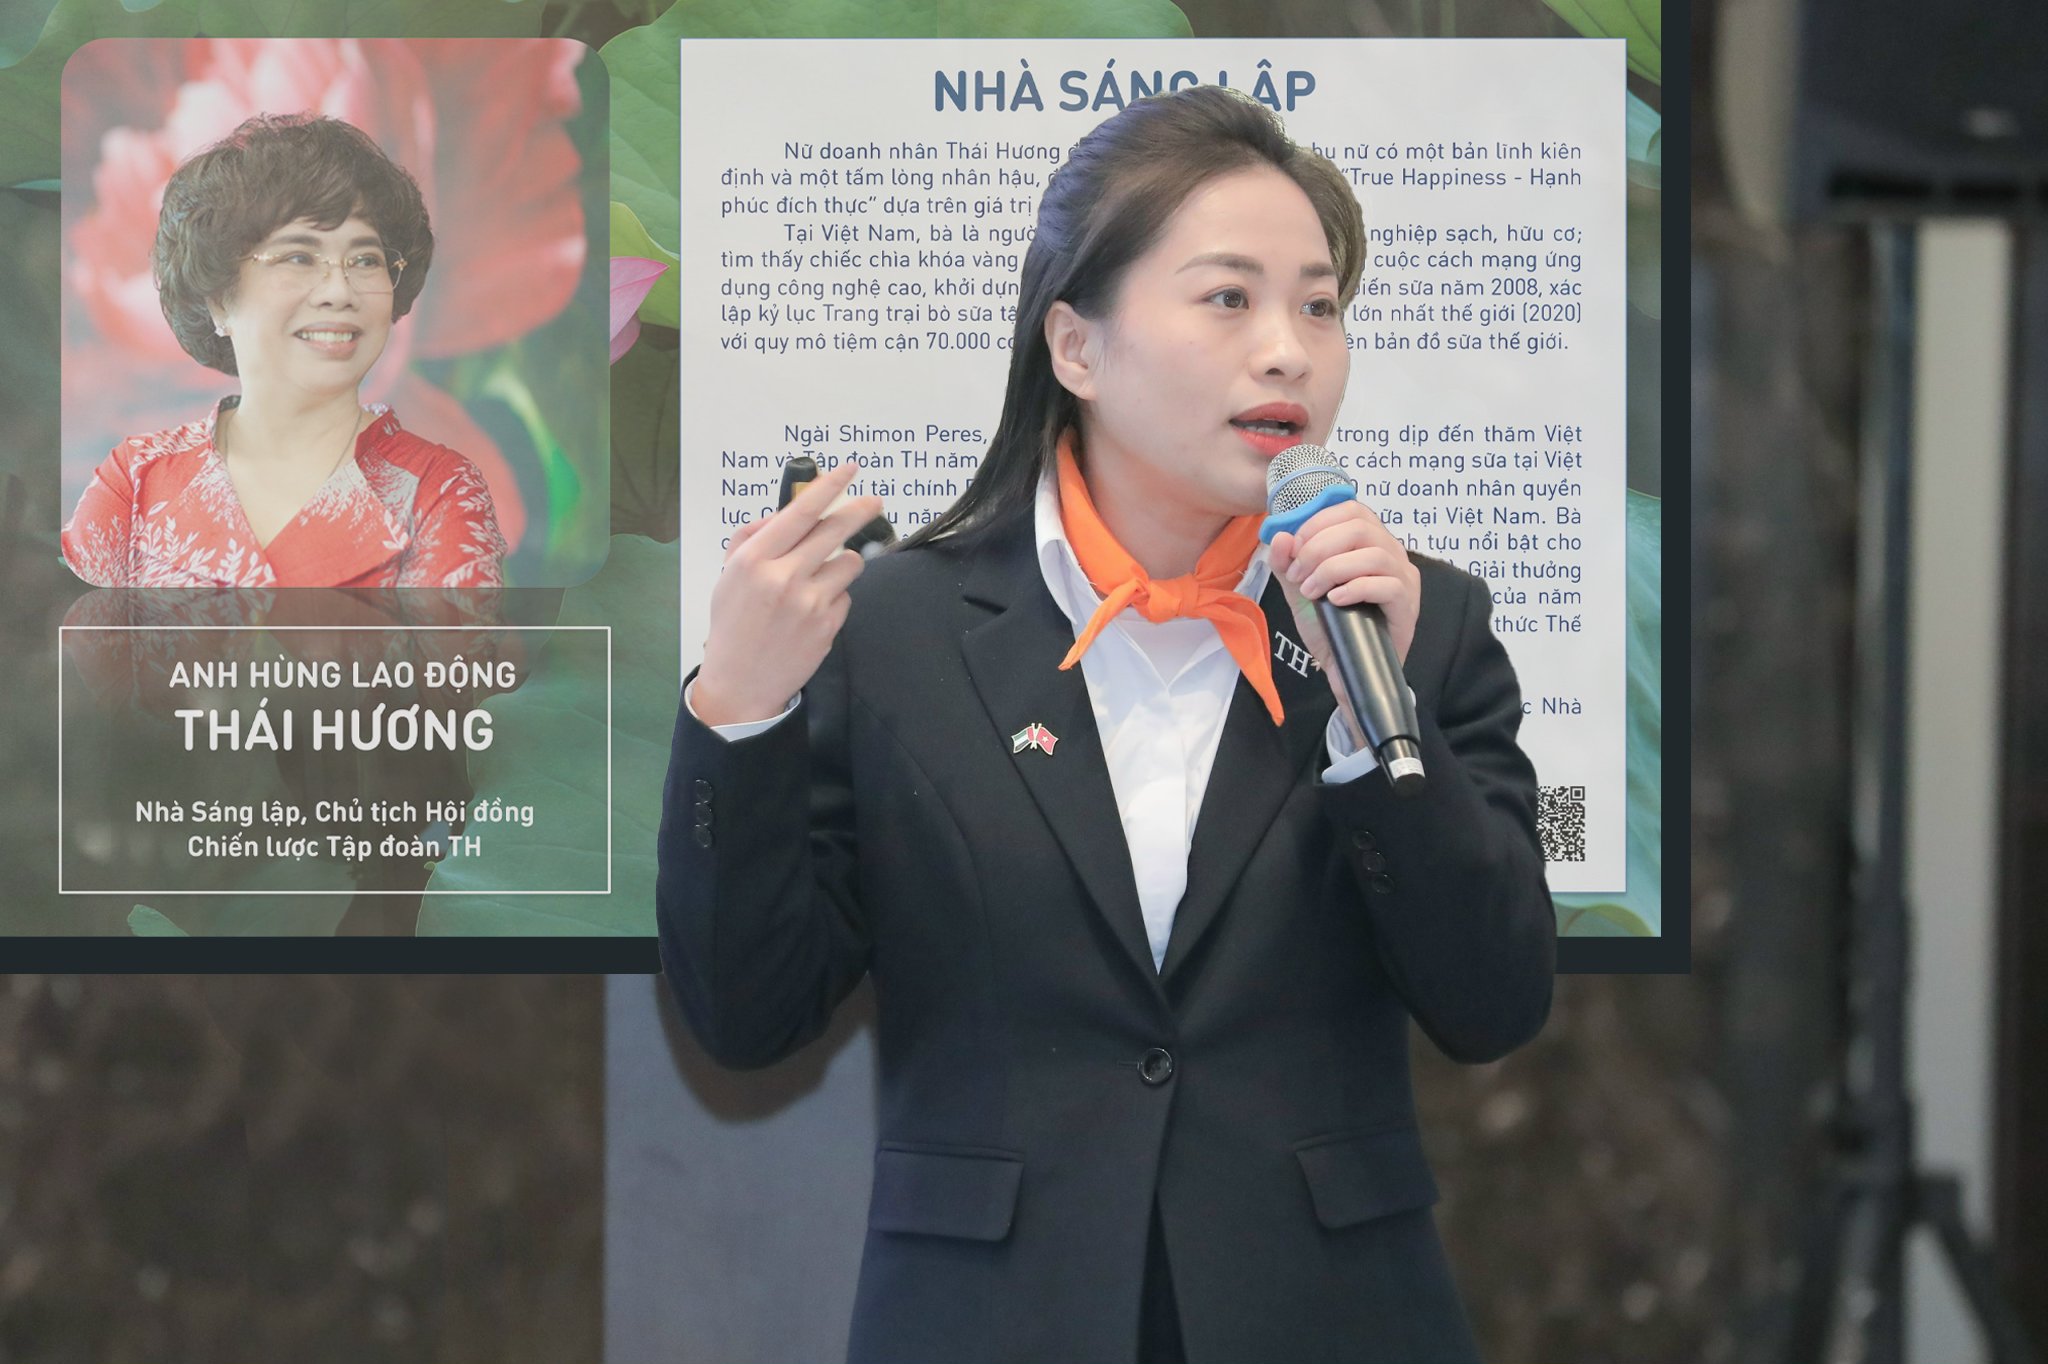 Bà Hoàng Thị Thanh Thủy, Giám đốc Phát triển bền vững Tập đoàn TH chia sẻ kinh nghiệm về thực thi ESG tại doanh nghiệp.